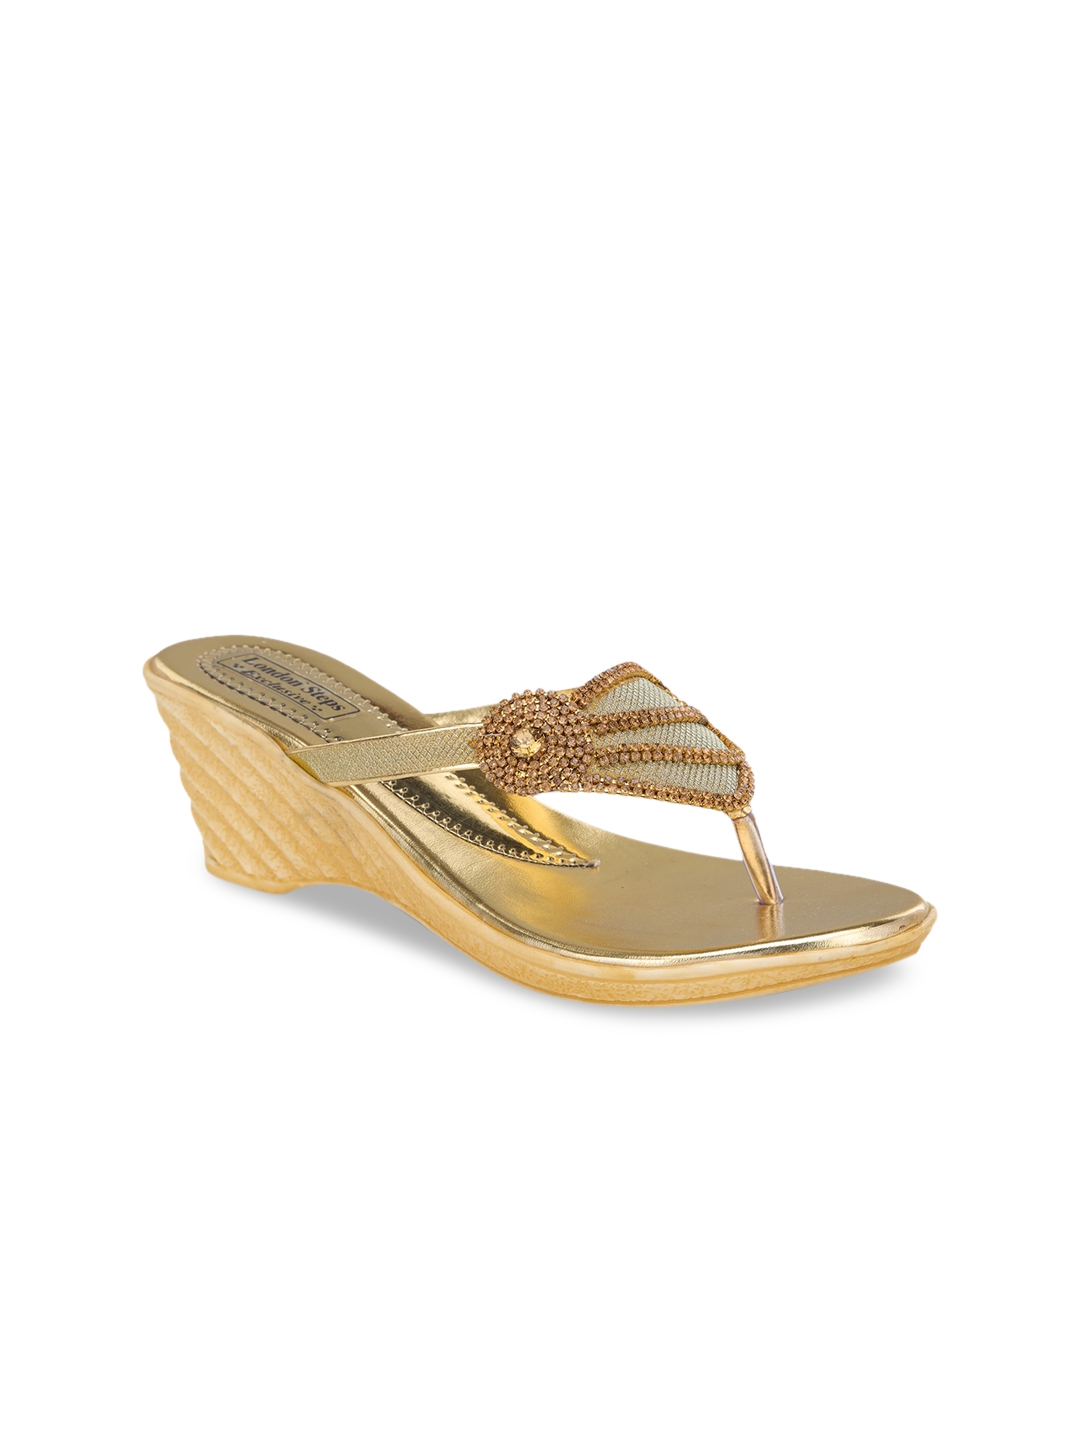 LONDON STEPS Women Gold Embellished Wedge Sandals